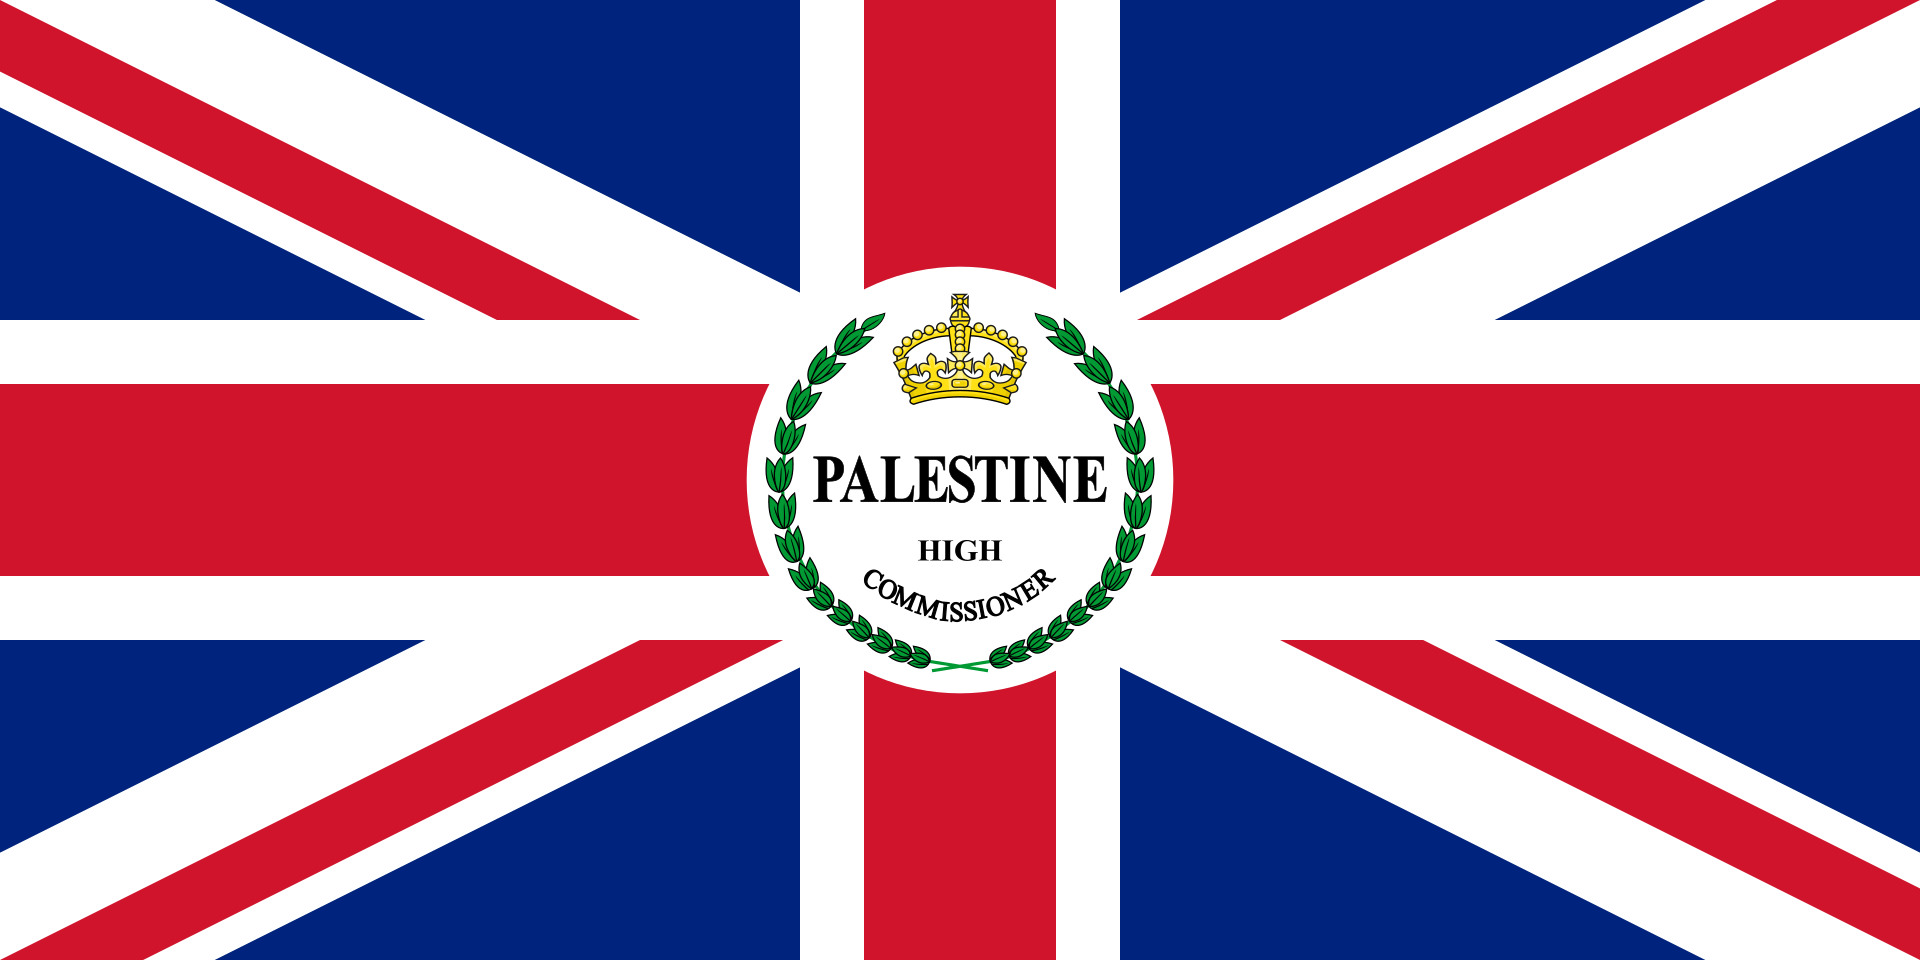 Dies war die offizielle Flagge Palästinas unter britischem Mandat.